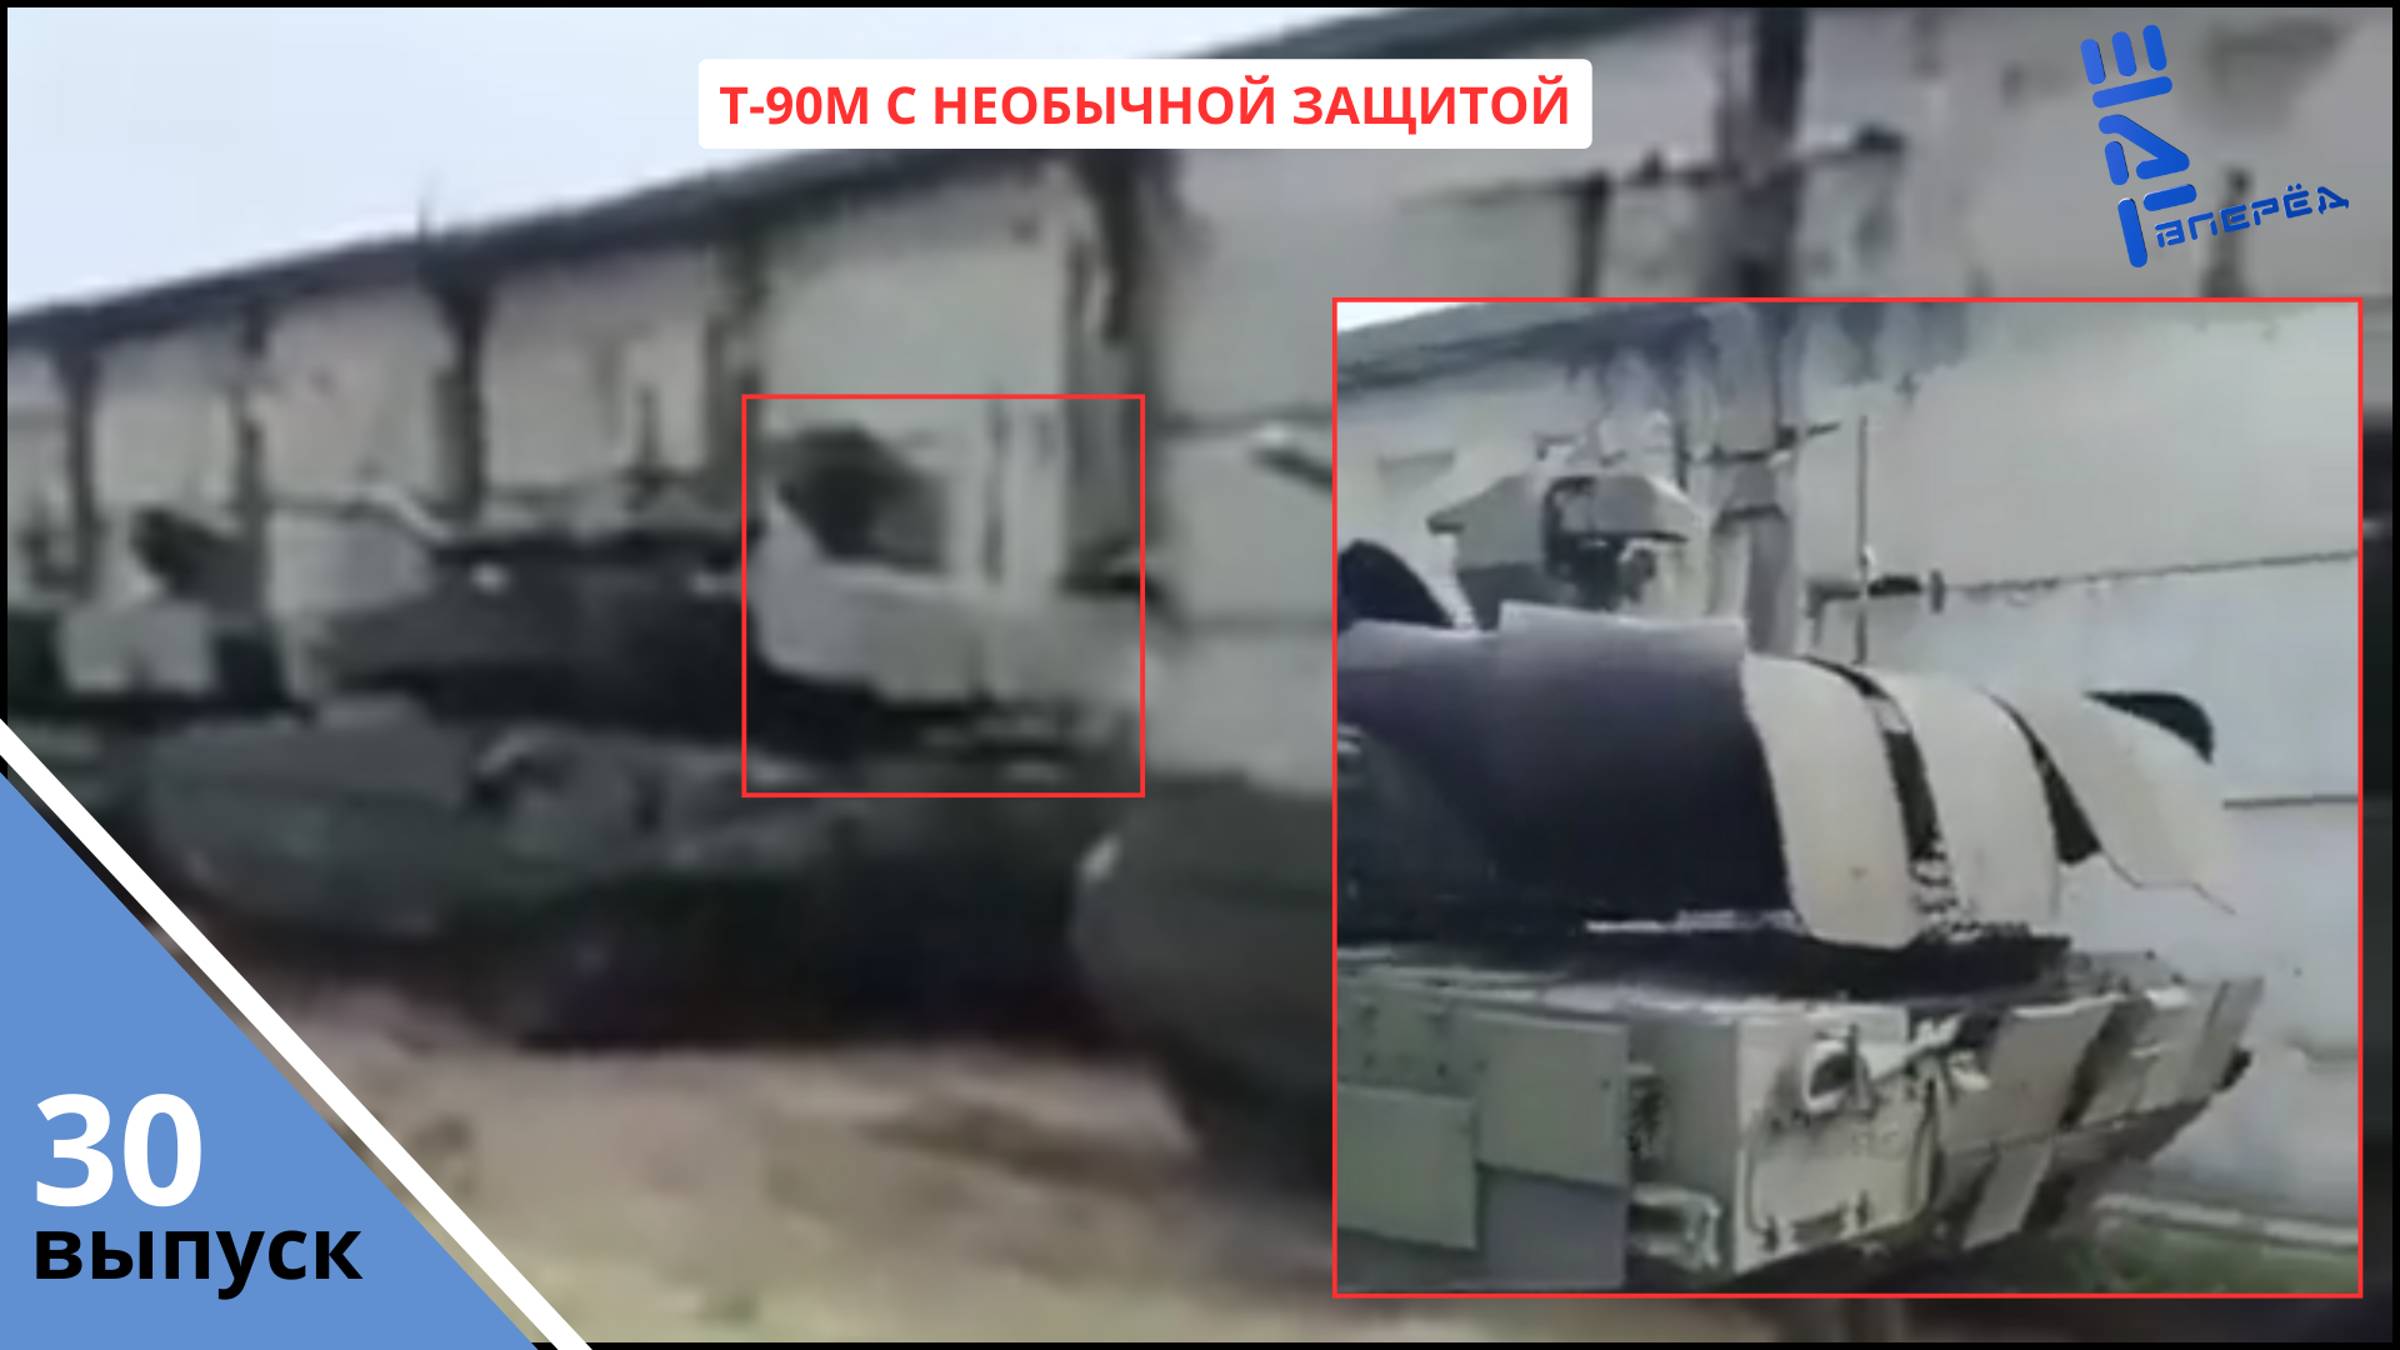 На обновленном танке Т-90М замечена новая защита